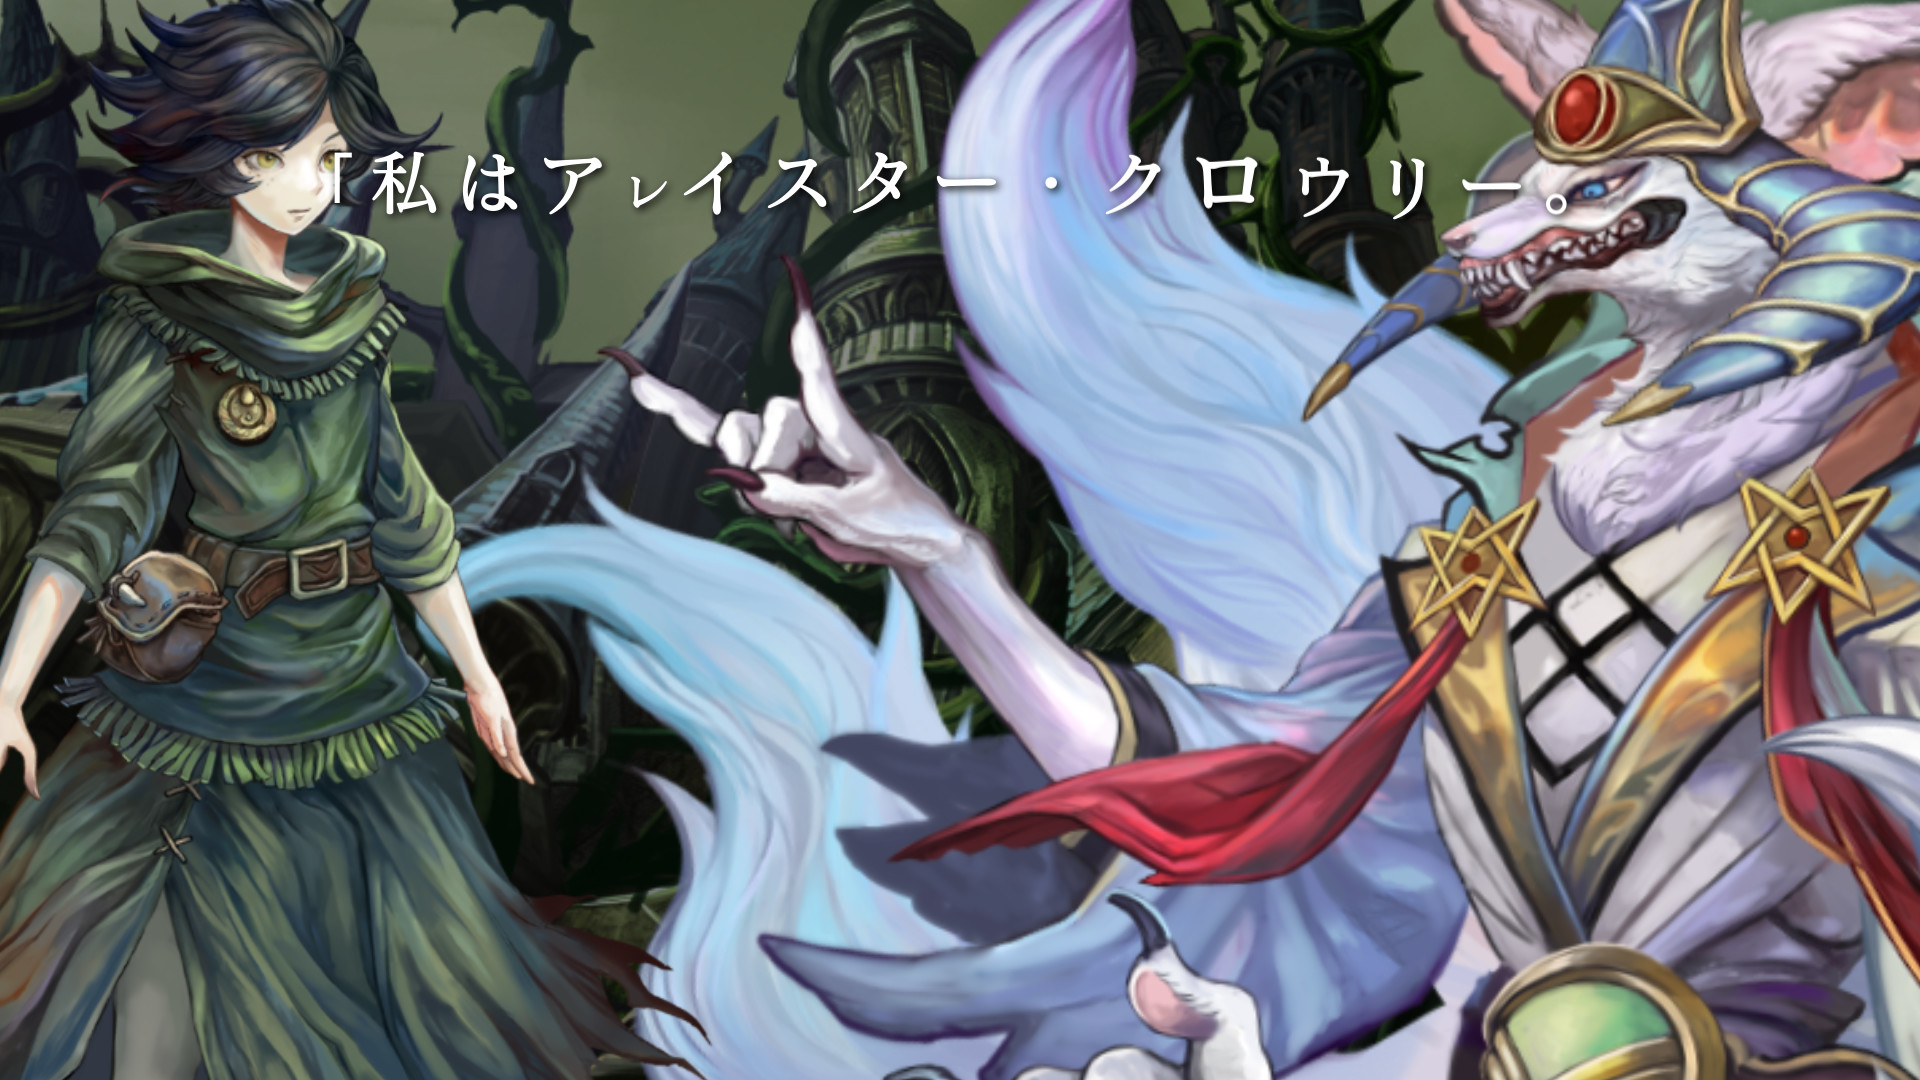 PC（Steam）版「十三月のふたり姫」，2022年12月3日に配信決定。童話“眠れる森の美女”を新解釈したビジュアルノベル